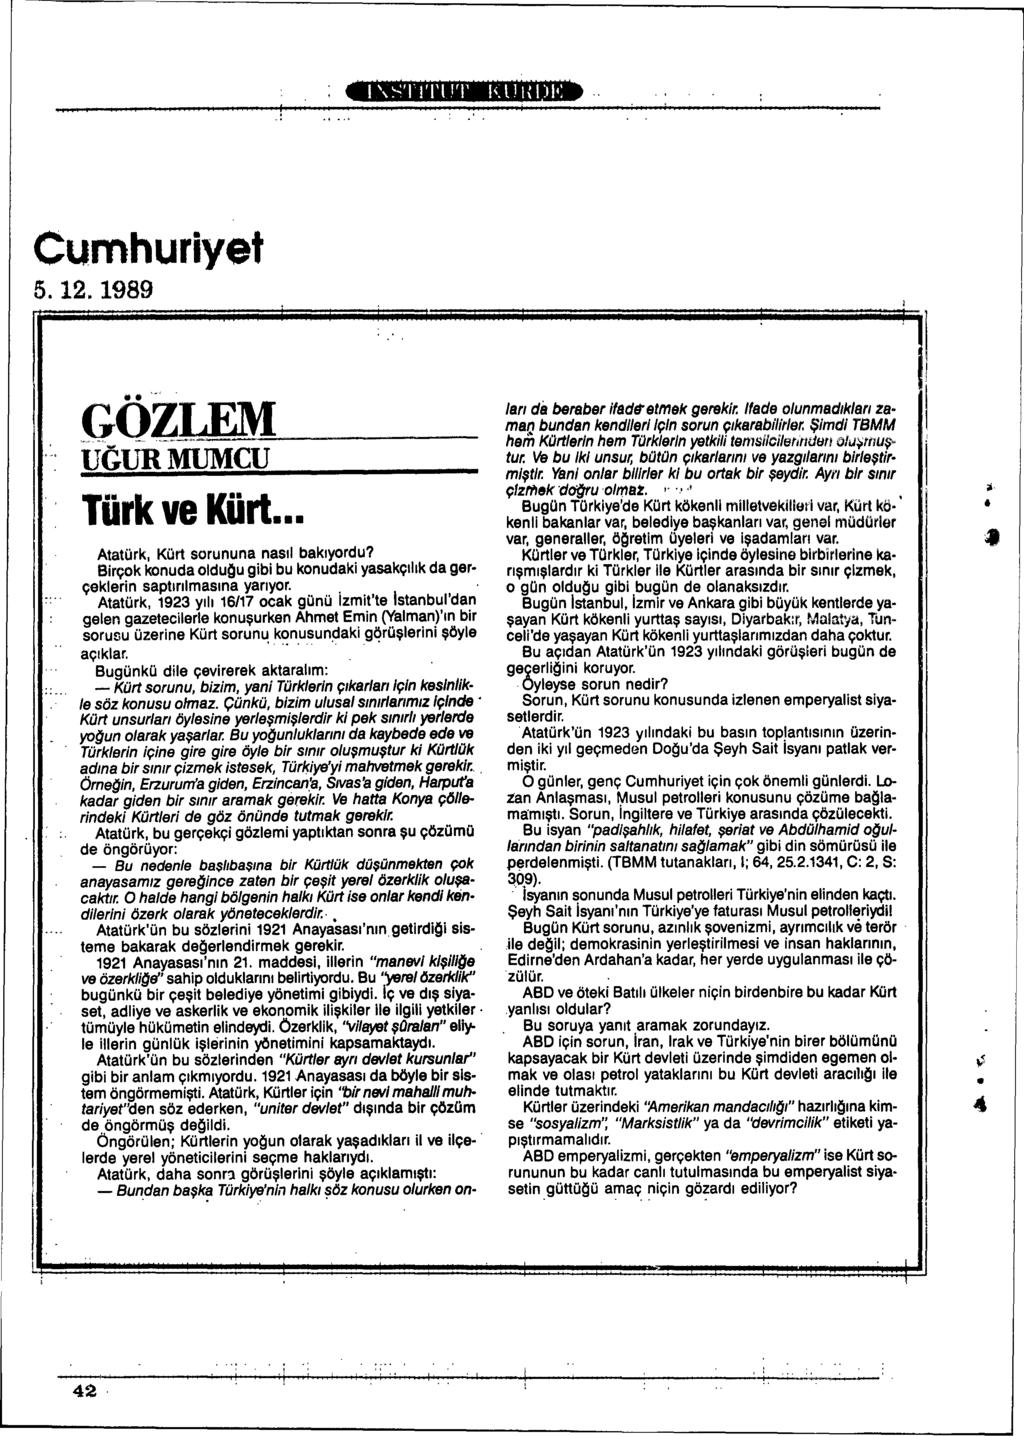 Cumhuriyet 5.12.1989 GÖZLEM G-~ UGURMUMCU ' ~. Türk ve Kürt. Atatürk, Kürt sorununa nasll baklyordu? Birçok konuda olduqu gibi bu konudaki yasakçlhk da gerçeklerin saptlnlmaslna yanyor.